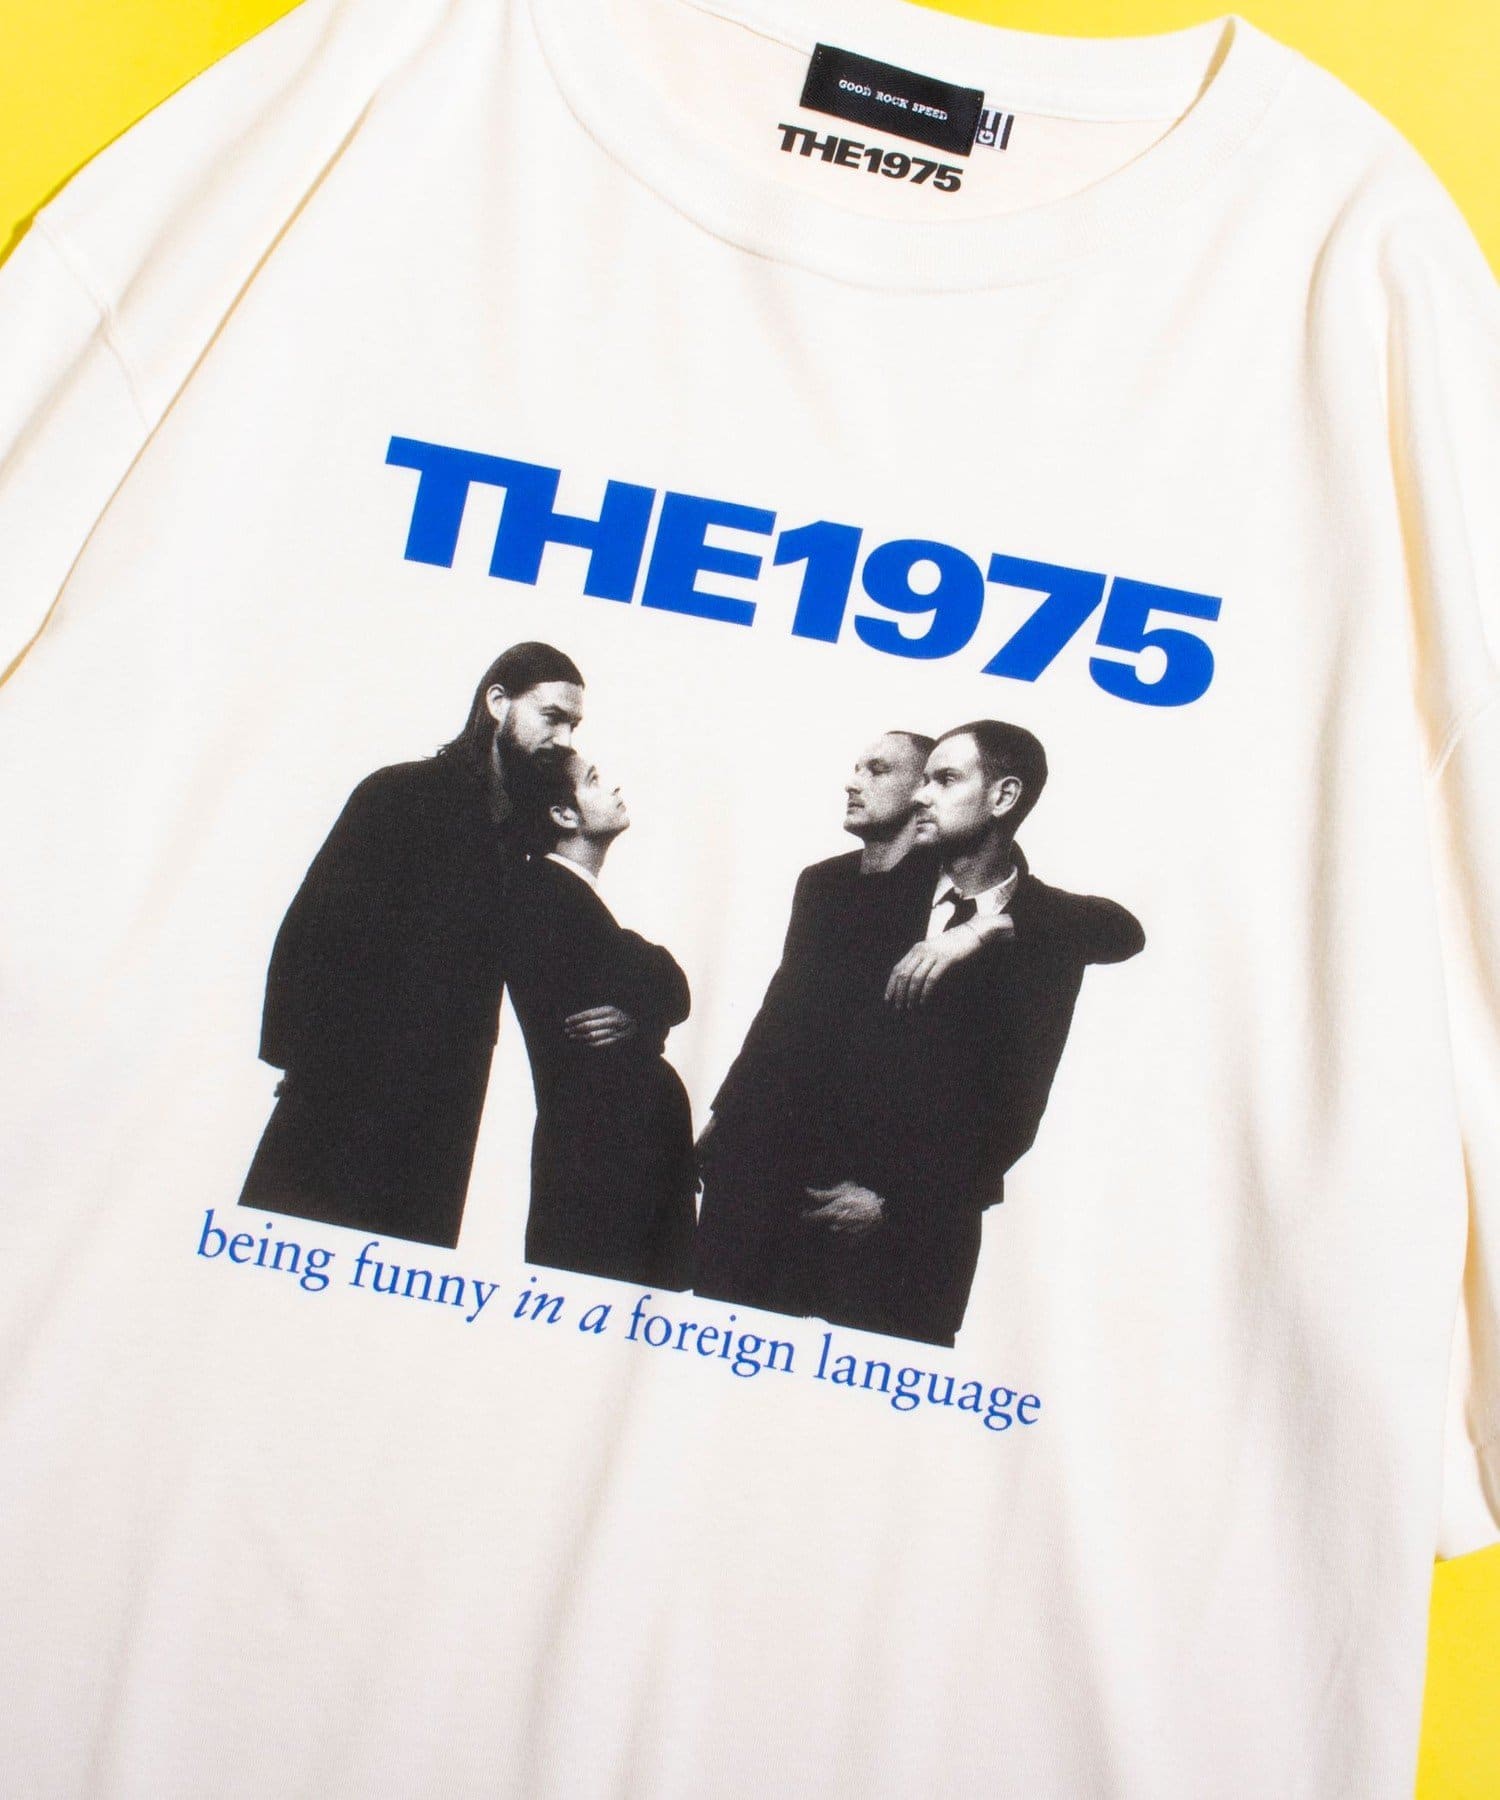 THE1975 公式サイト限定 Tシャツ - トップス